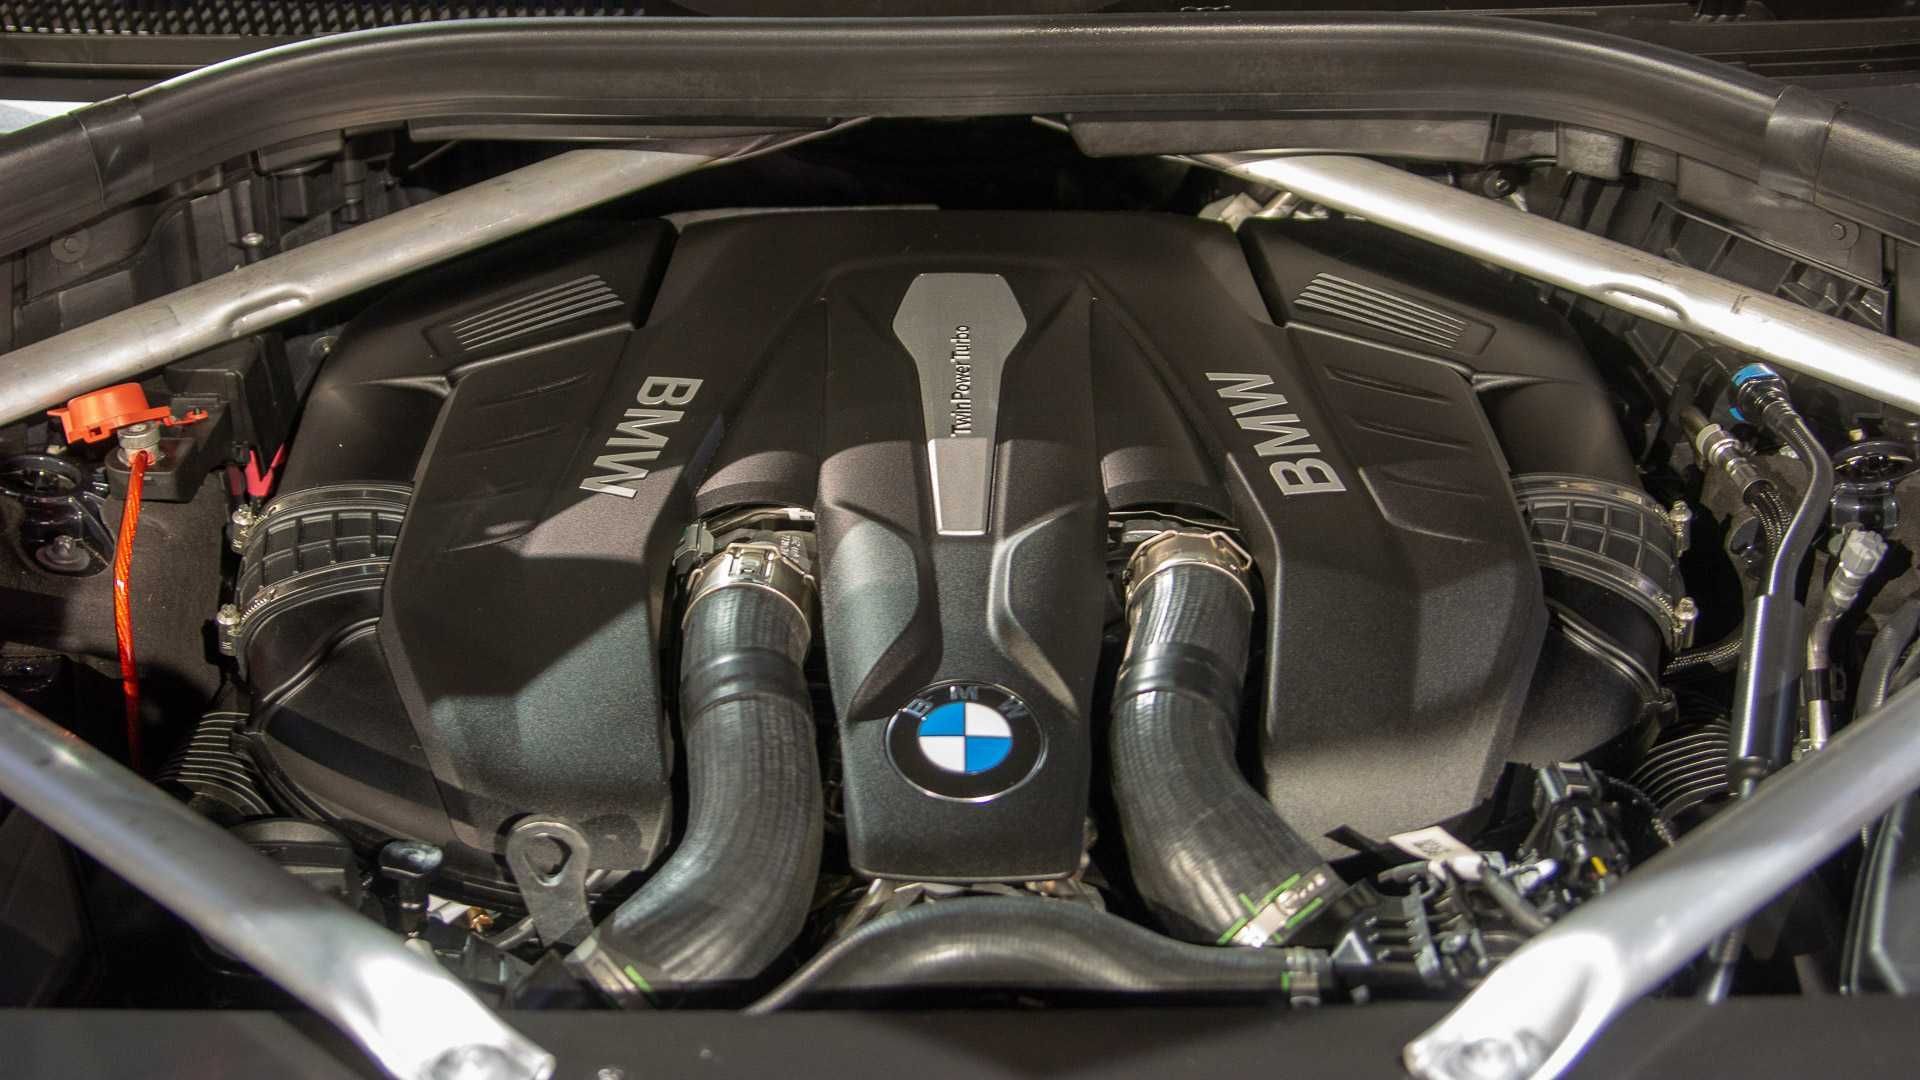 2019 BMW X7 engine